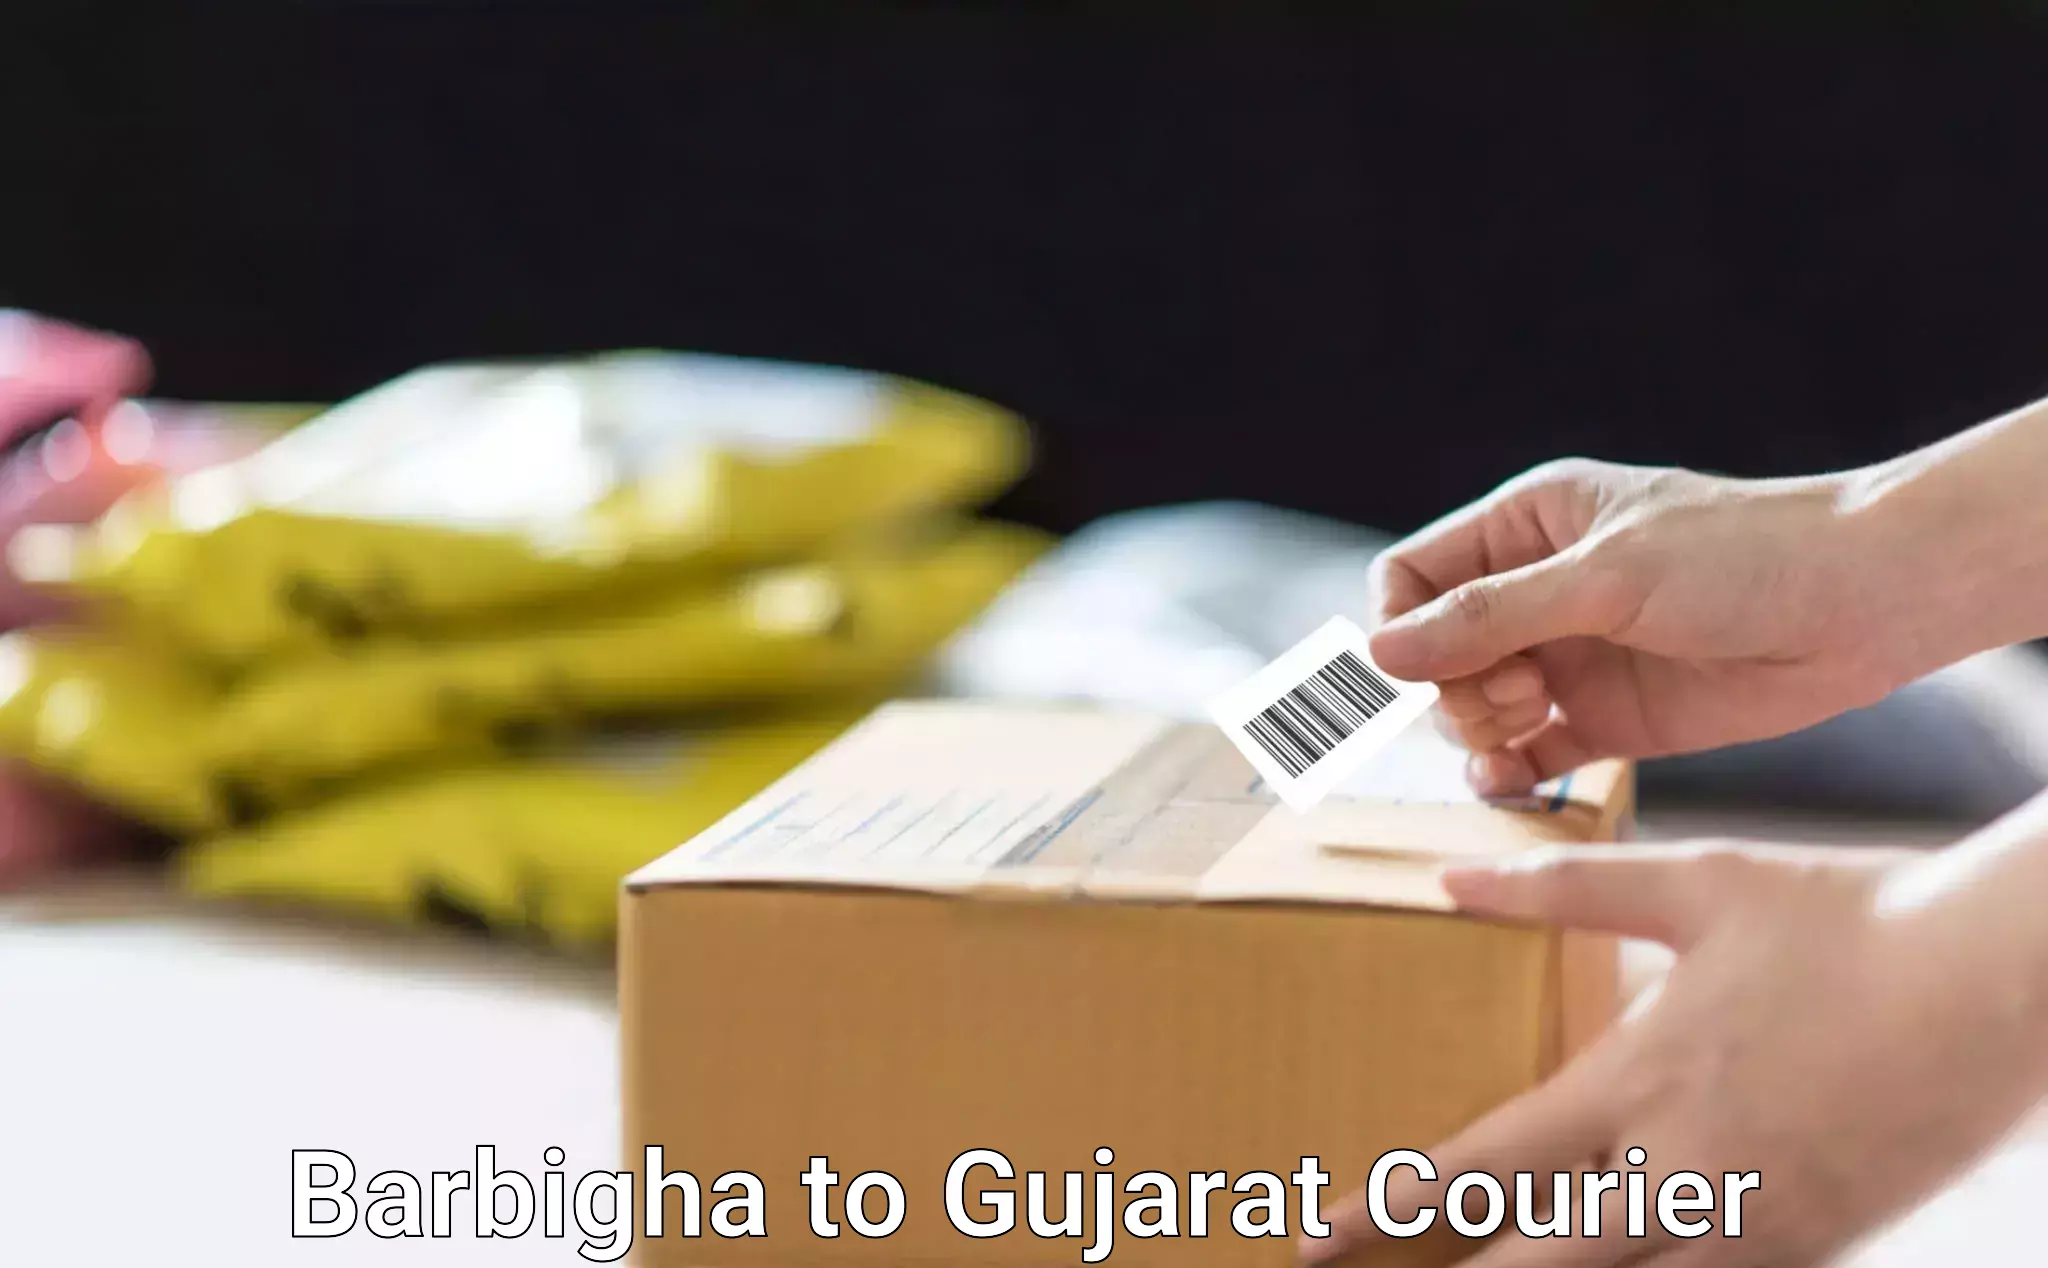 Furniture transport specialists Barbigha to Narmada Gujarat